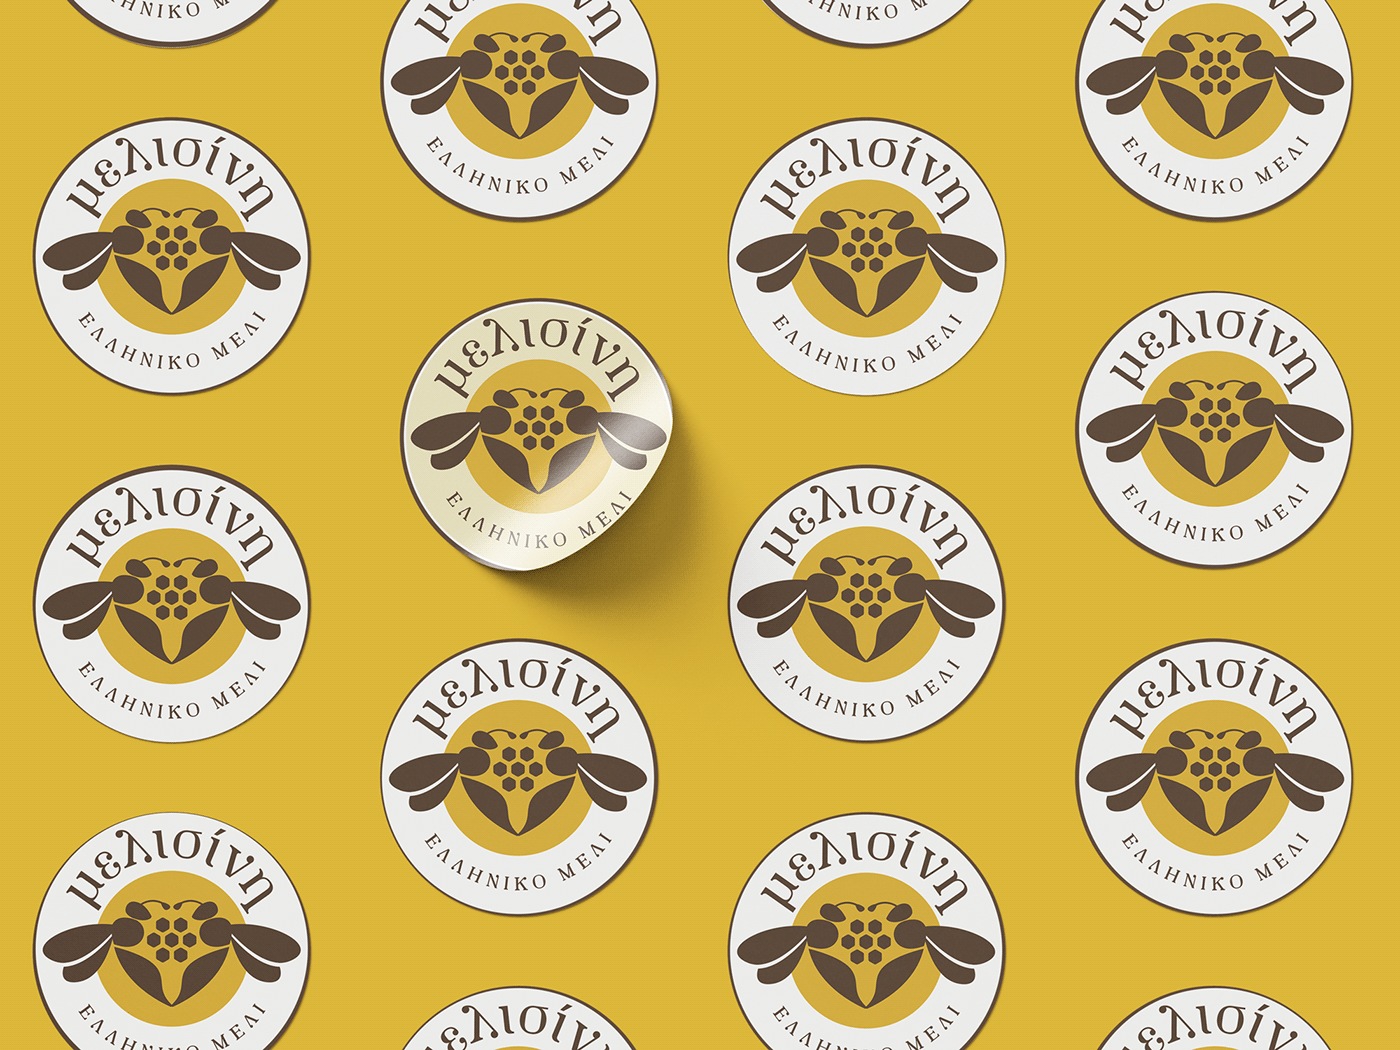 Beekeeper beekeeping bees brand identity greek honey honey honeybee Logo Design Packaging peloponnese